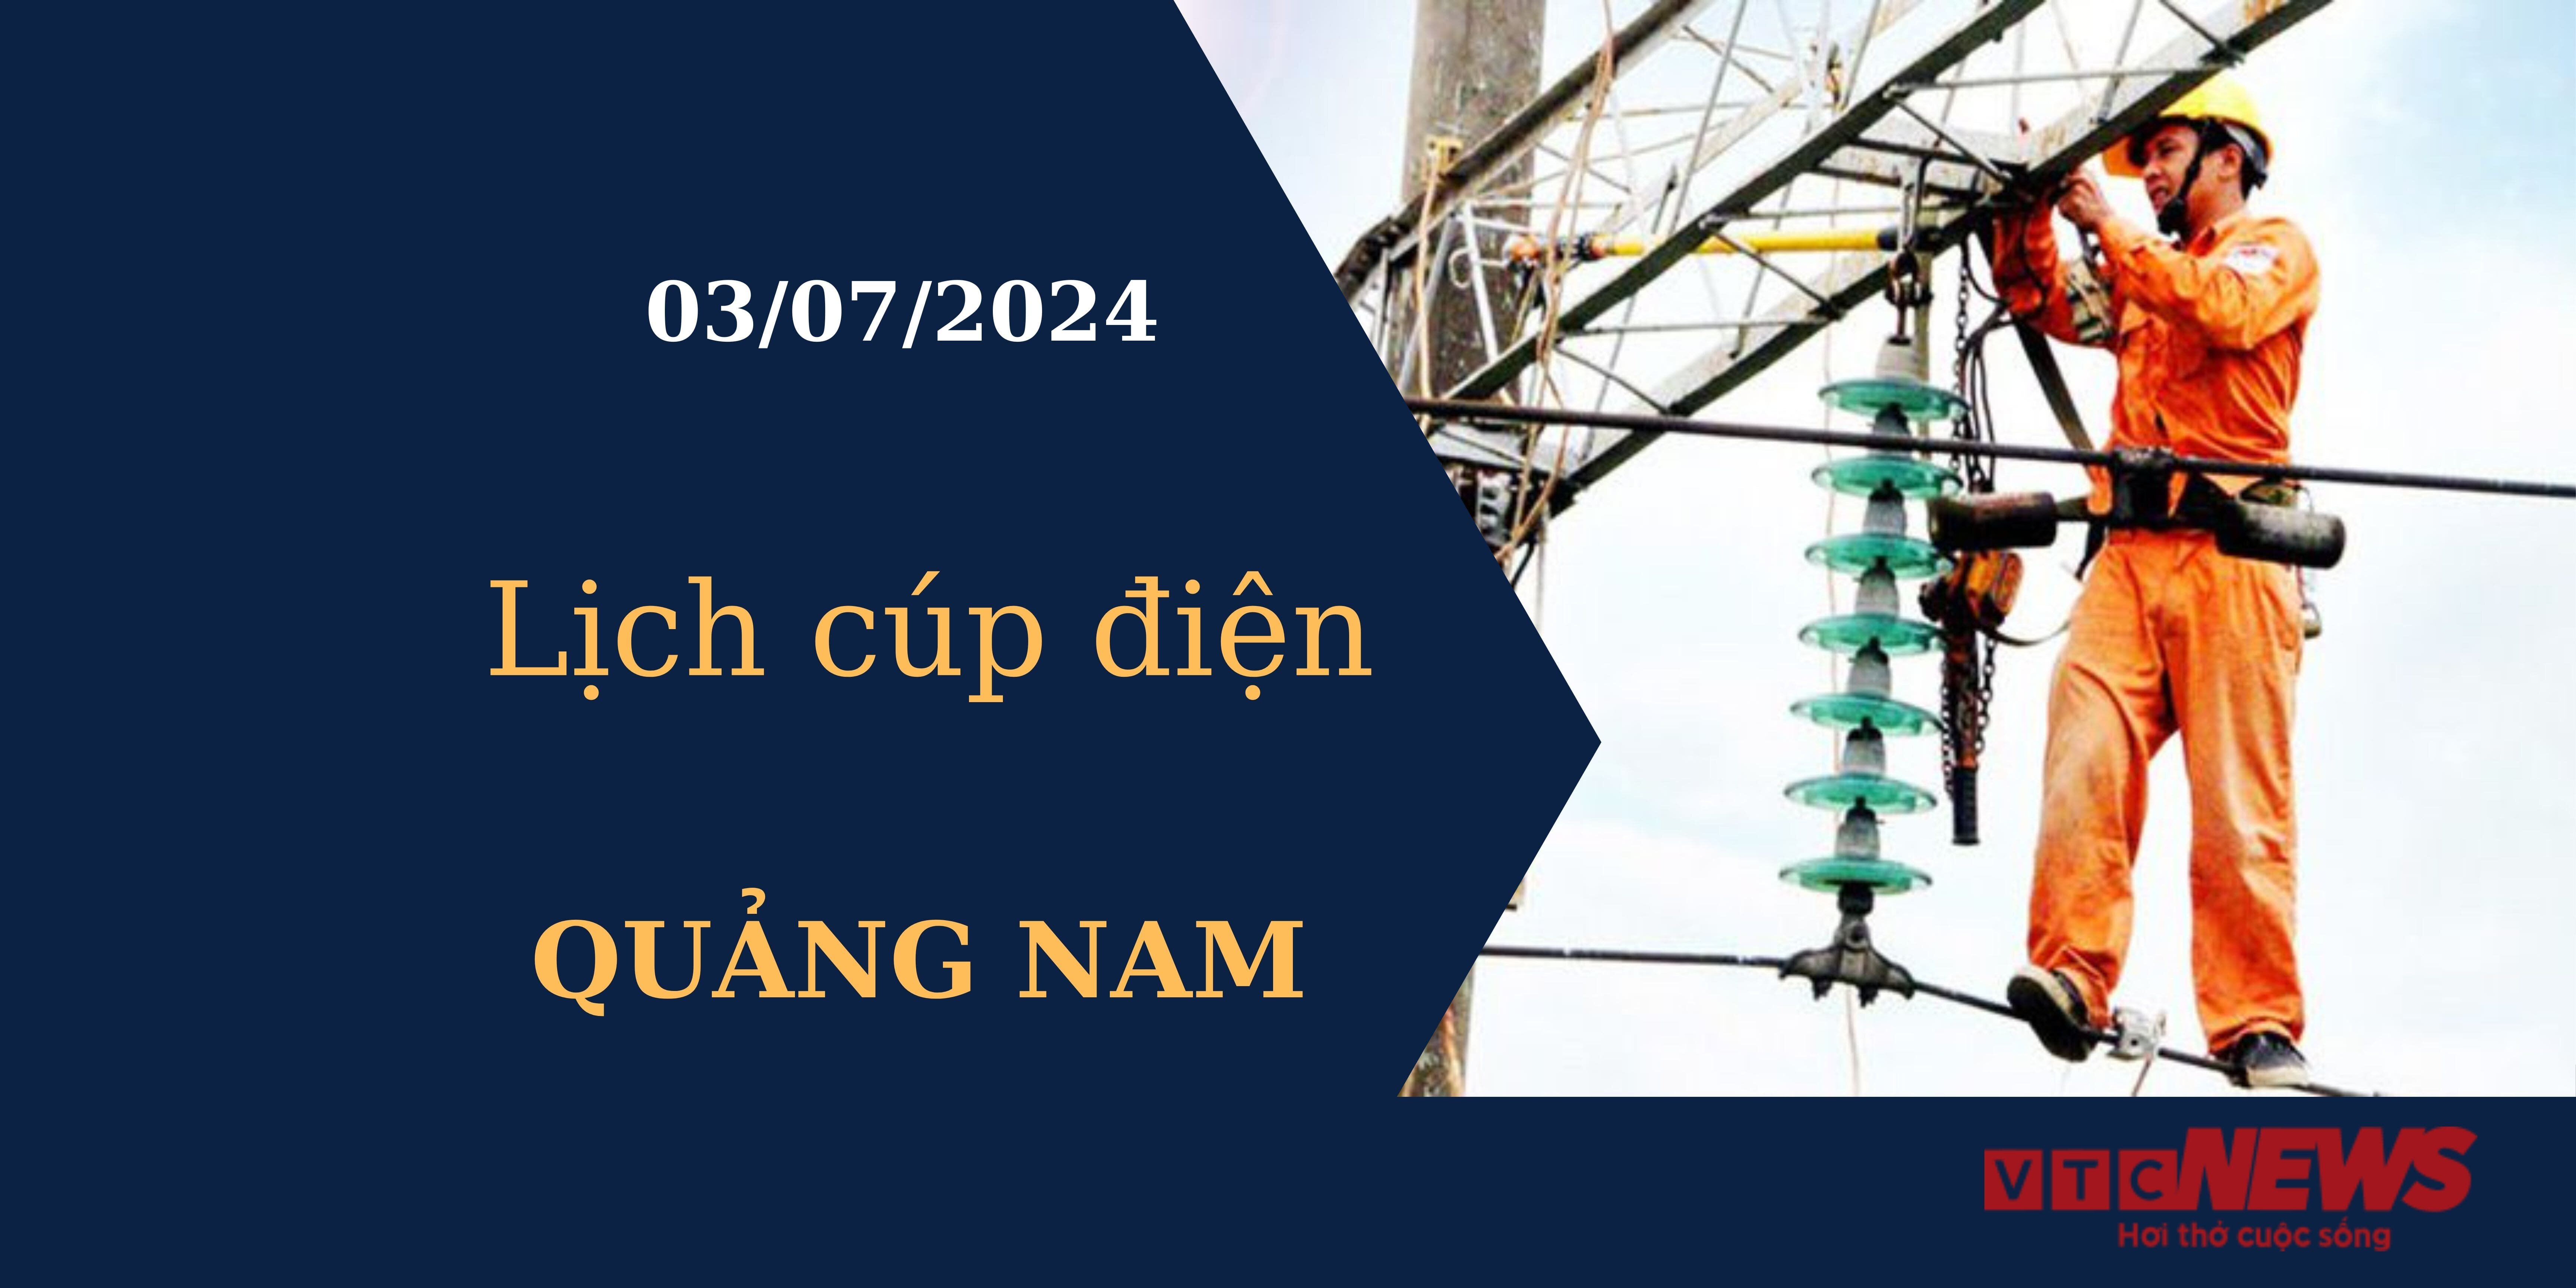 Lịch cúp điện hôm nay tại Quảng Nam ngày 03/07/2024